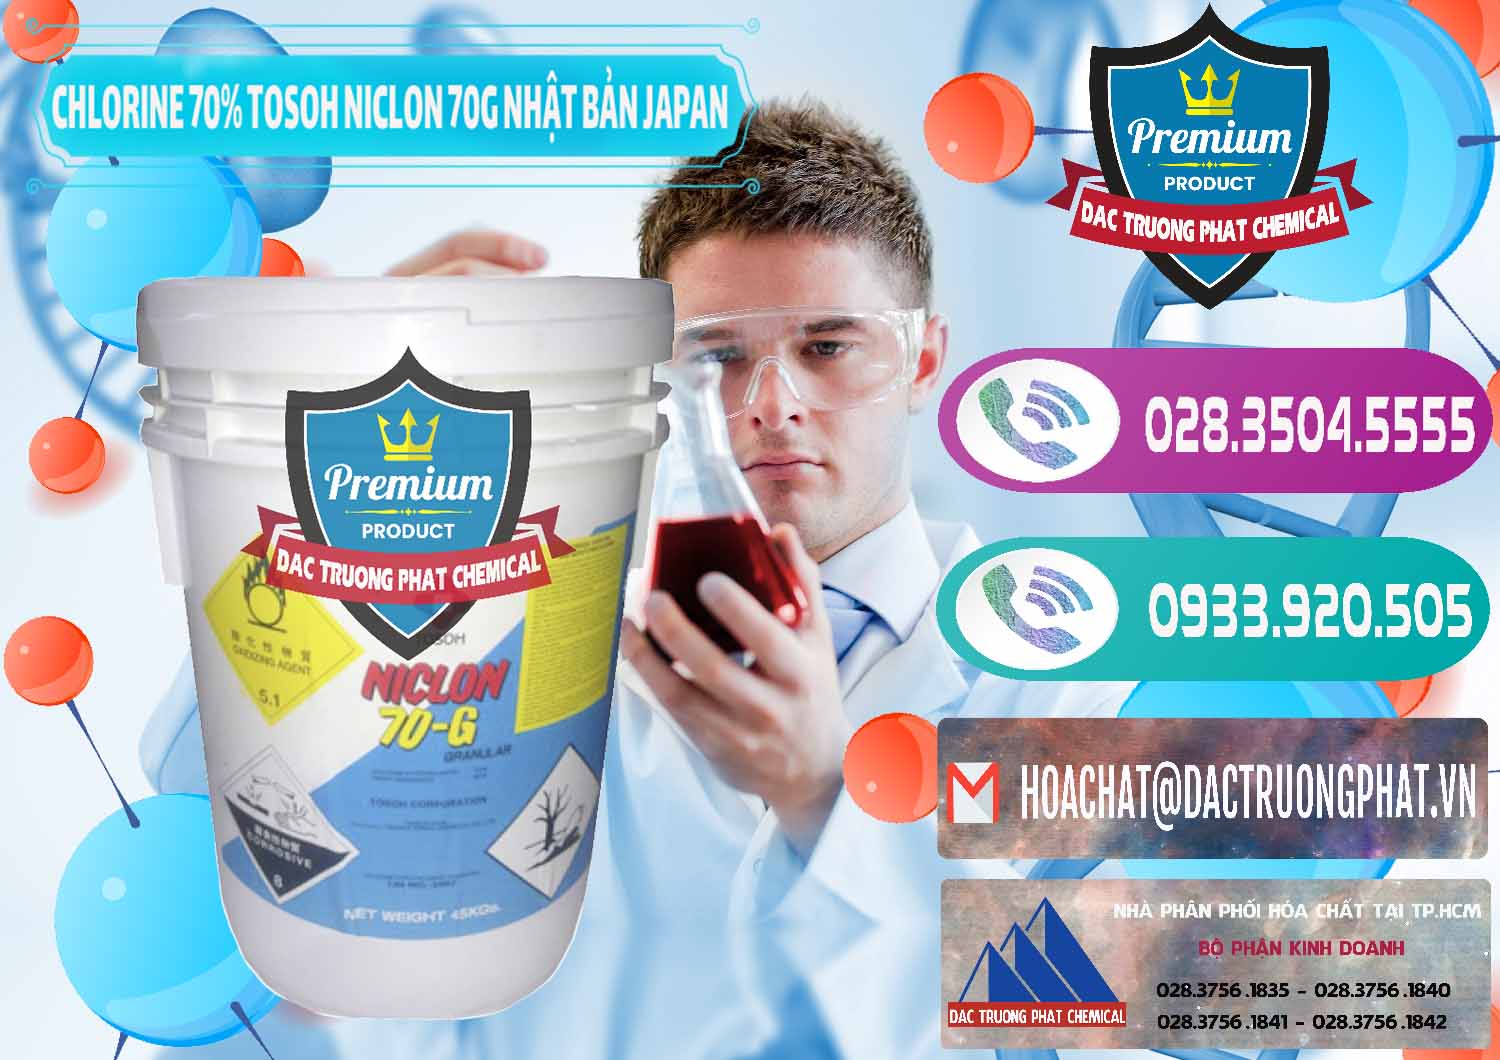 Đơn vị kinh doanh ( bán ) Clorin – Chlorine 70% Tosoh Niclon 70G Nhật Bản Japan - 0242 - Phân phối ( nhập khẩu ) hóa chất tại TP.HCM - hoachatxulynuoc.com